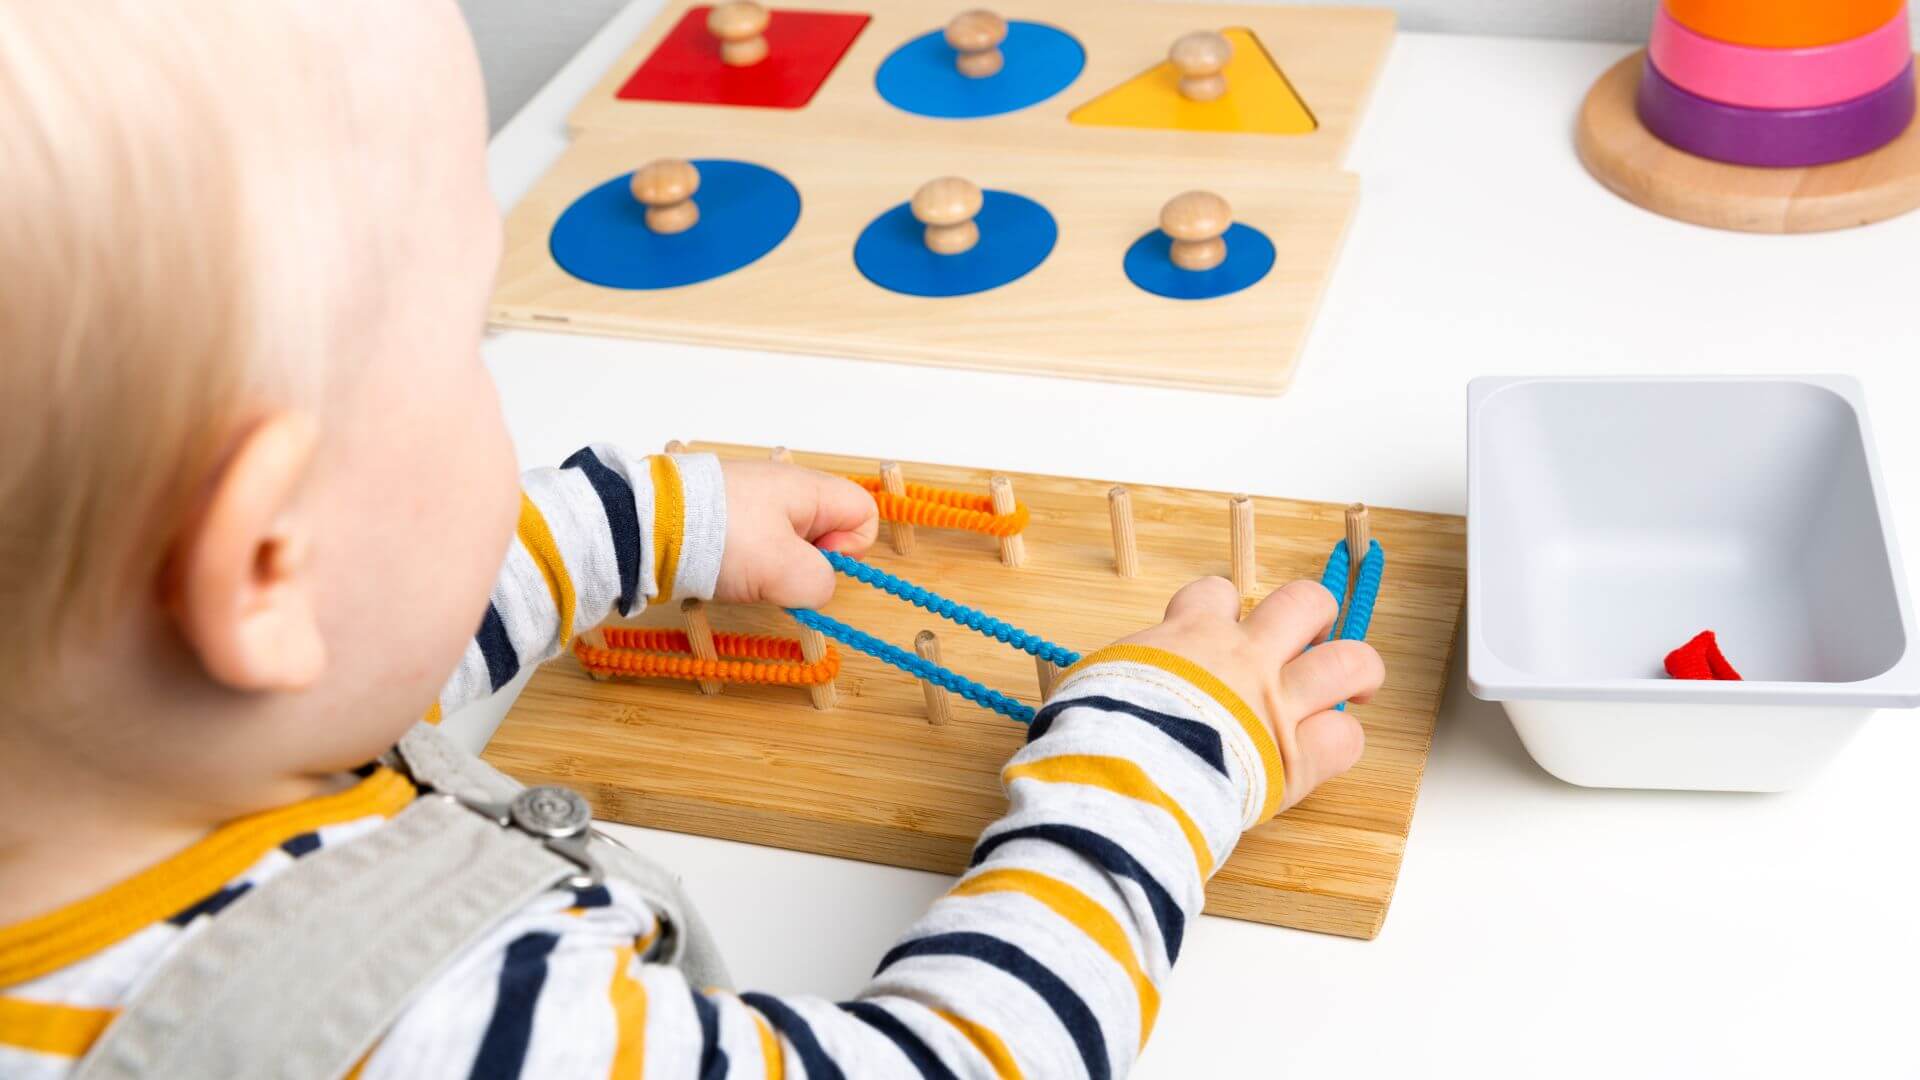 Montessori für Kinder von 1,5 bis 3 Jahren: praktische